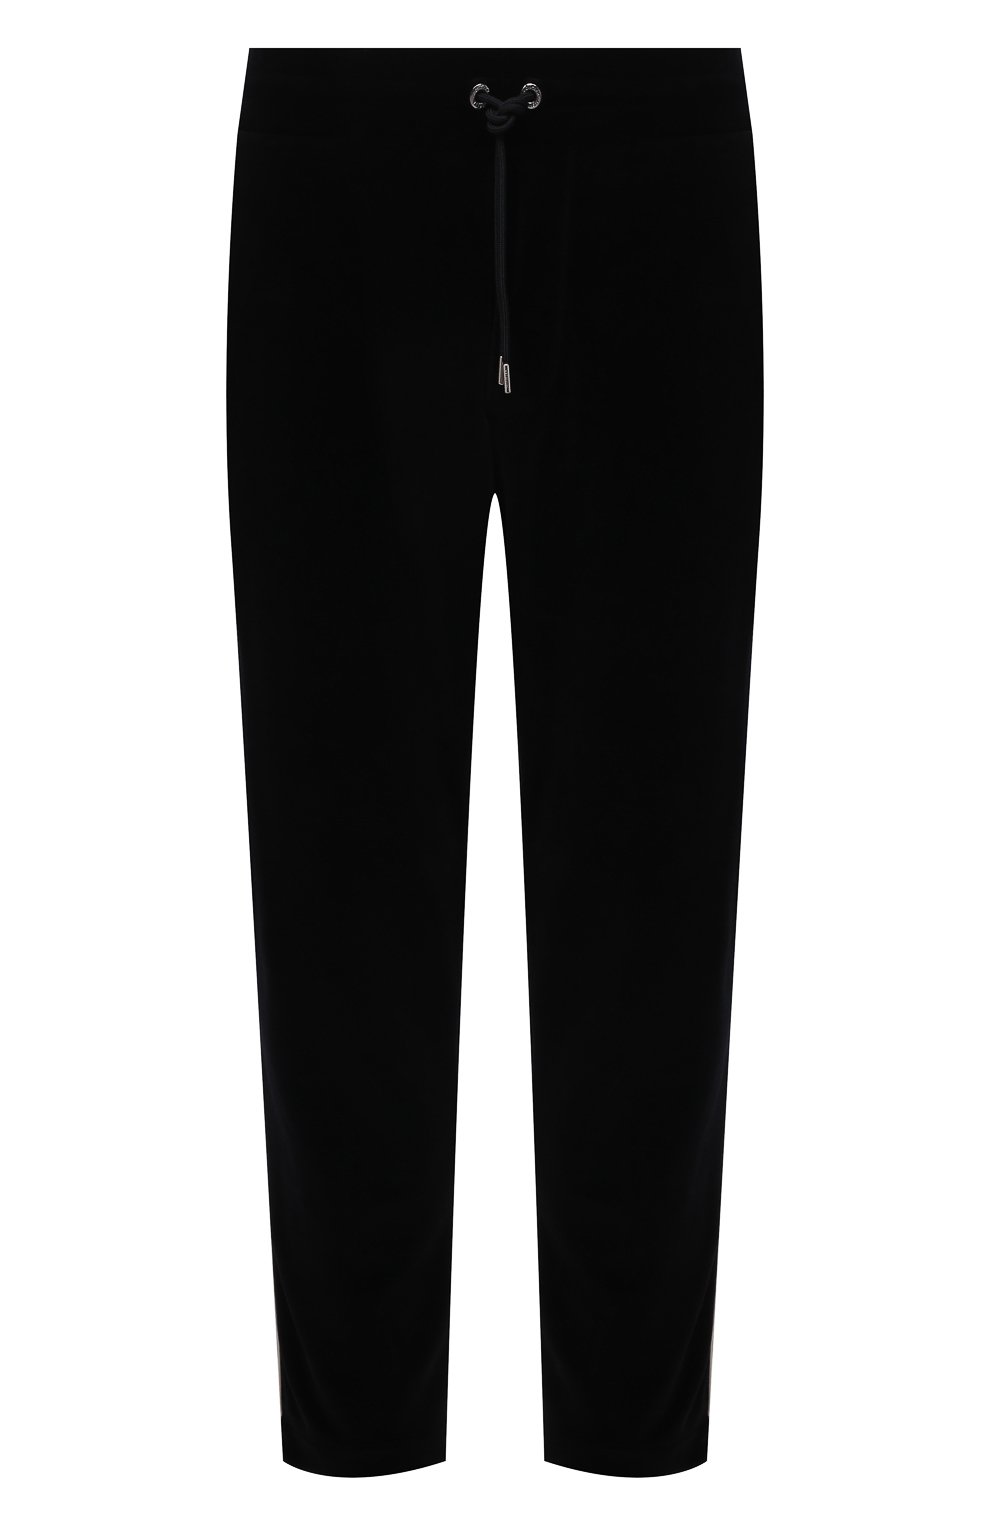 Мужские хлопковые брюки MONCLER черного цвета, арт. G2-091-8H000-06-899GH | Фото 1 (Длина (брюки, джинсы): Стандартные; Случай: Повседневный; Материал внешний: Хлопок; Стили: Спорт-шик)